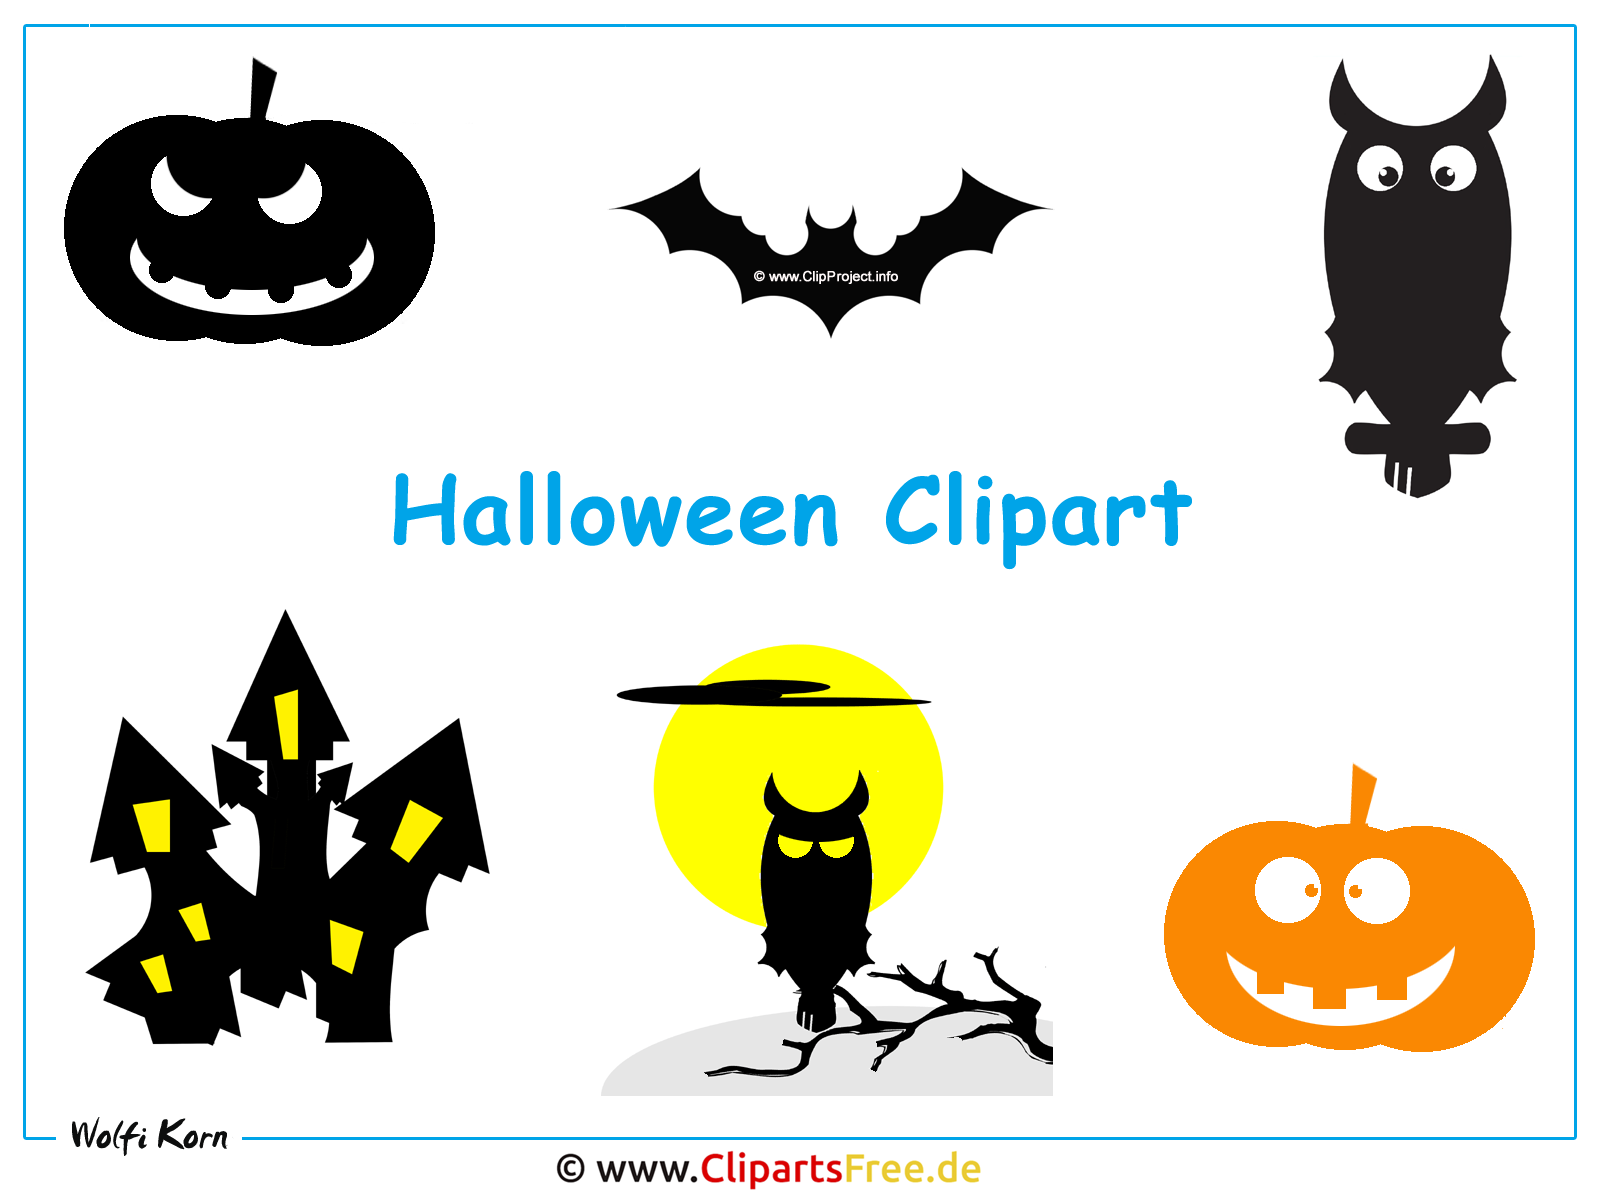 clipart halloween gratis - photo #18